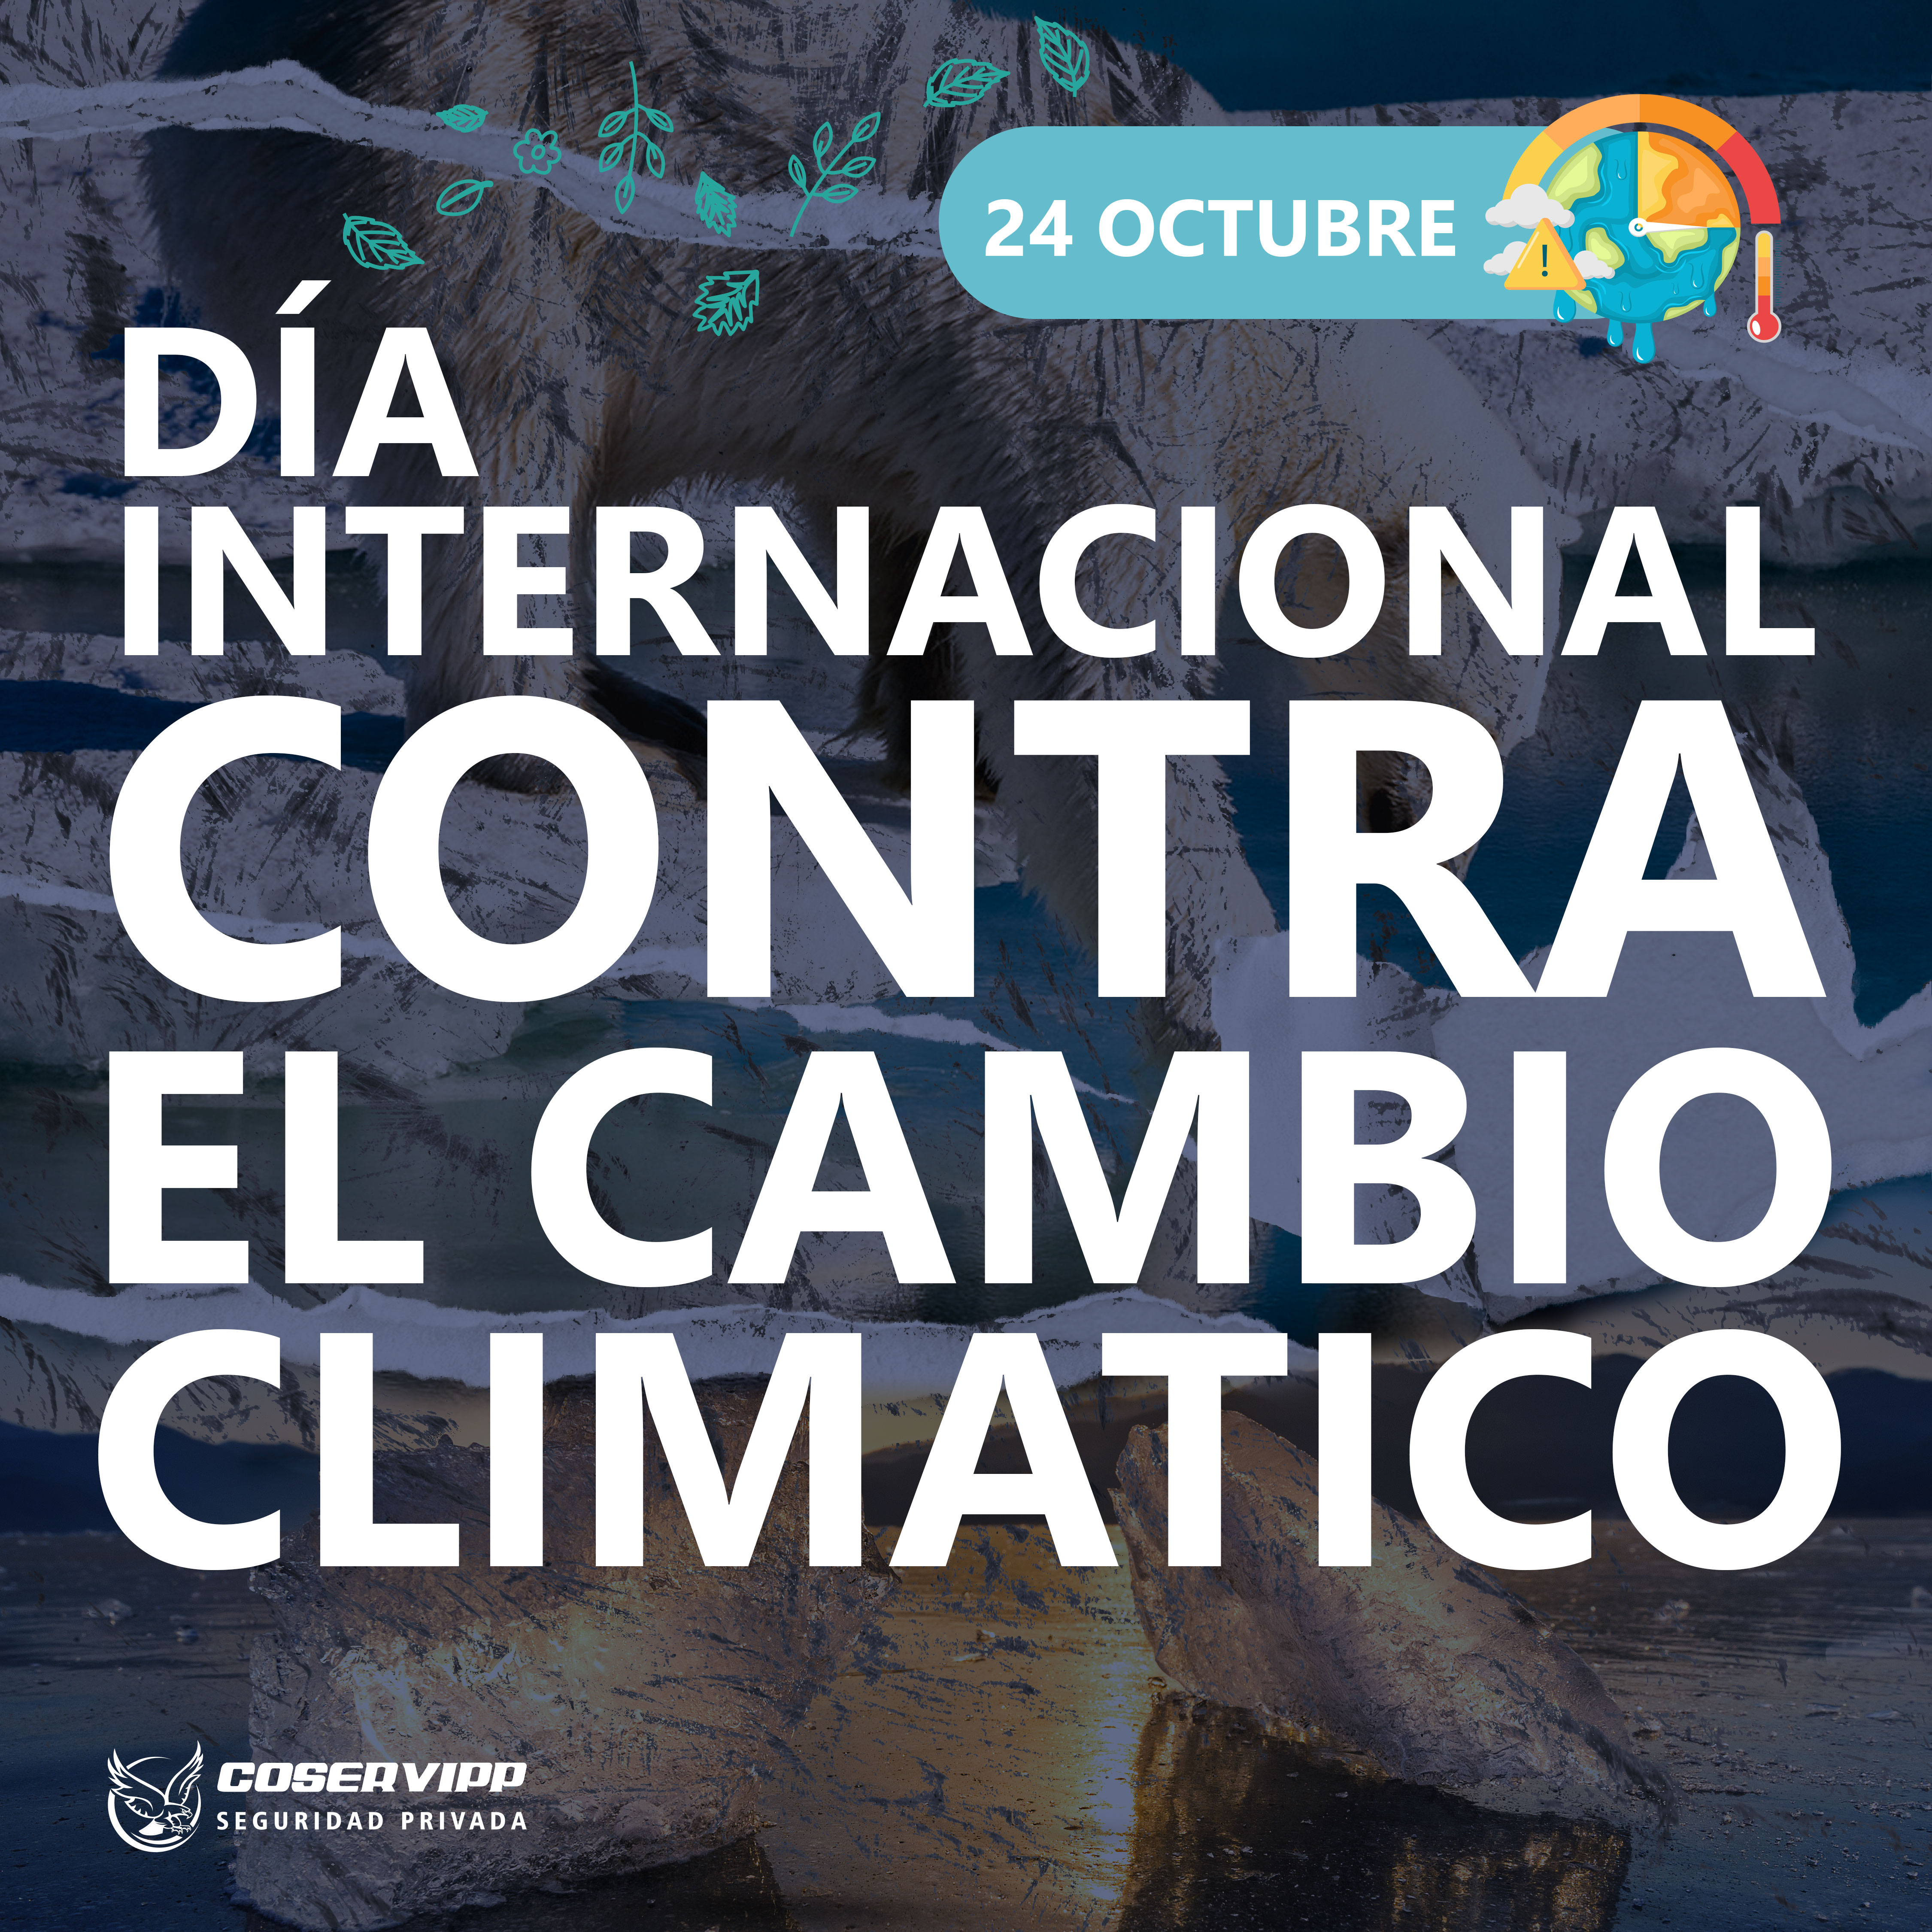 DÍA INTERNACIONAL CONTRA EL CAMBIO CLIMATICO